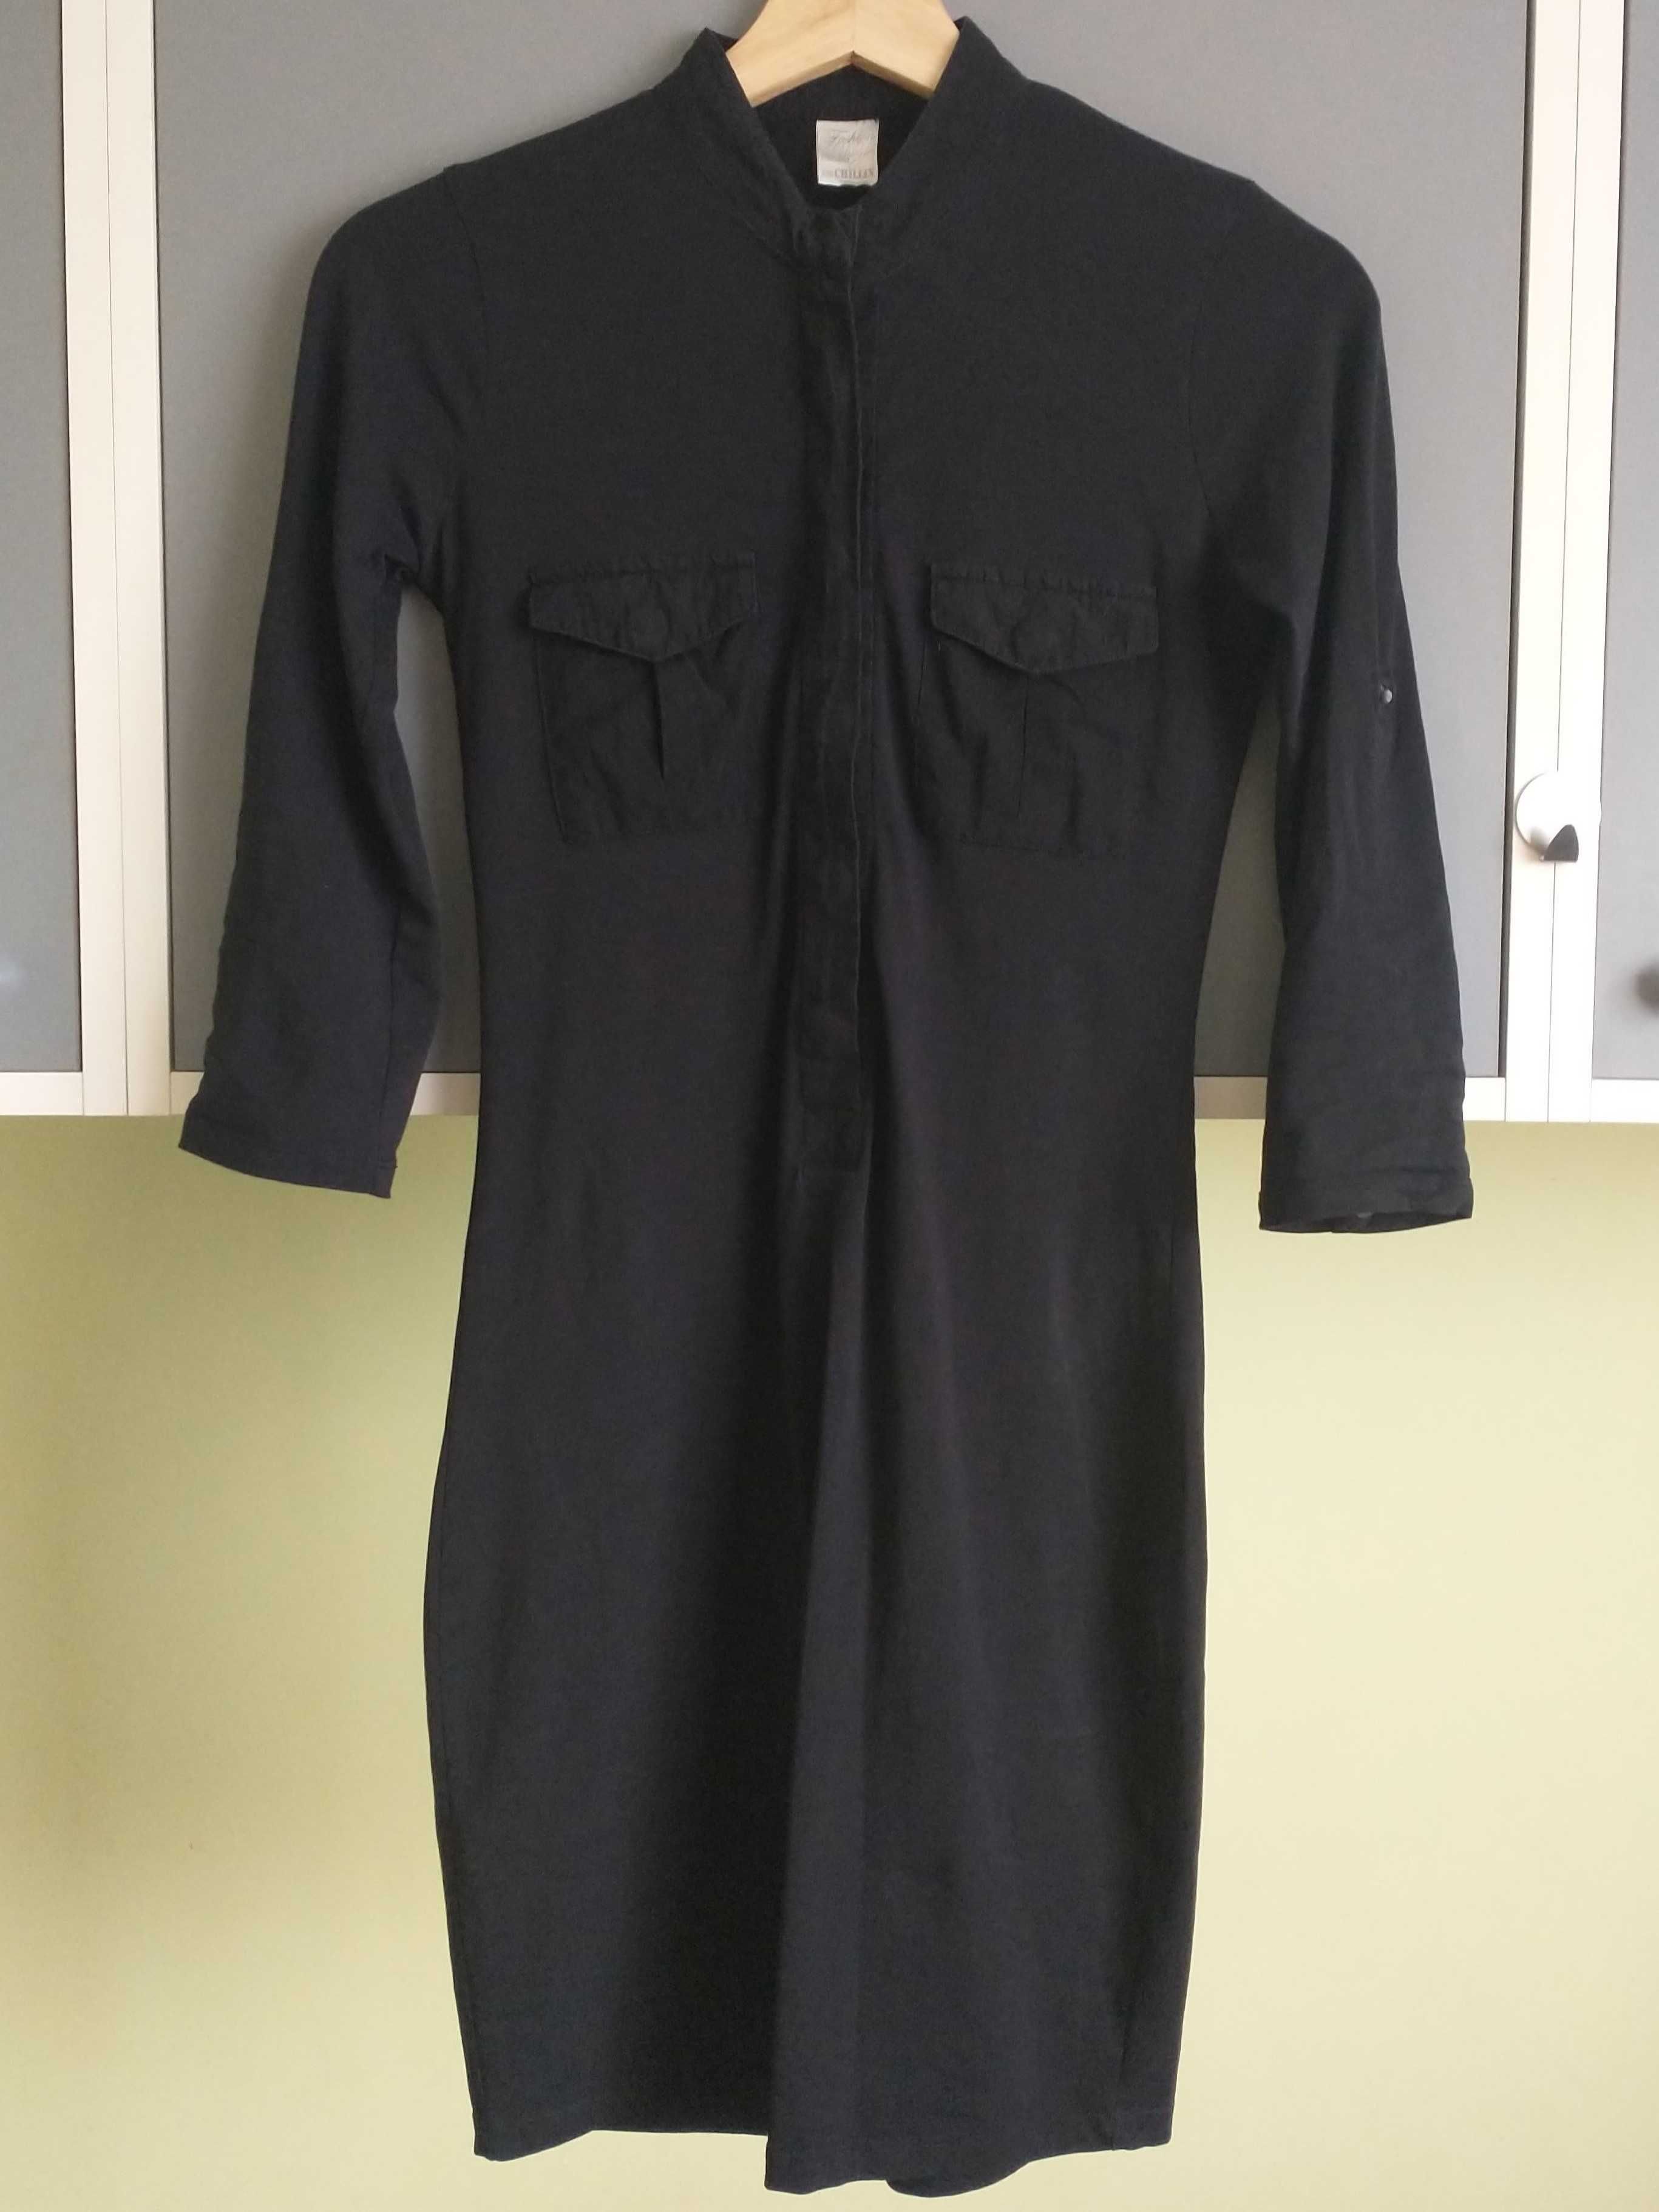 czarna sukienka z 3/4 rękawem marki Fashion Duty, Chillin, rozmiar xs